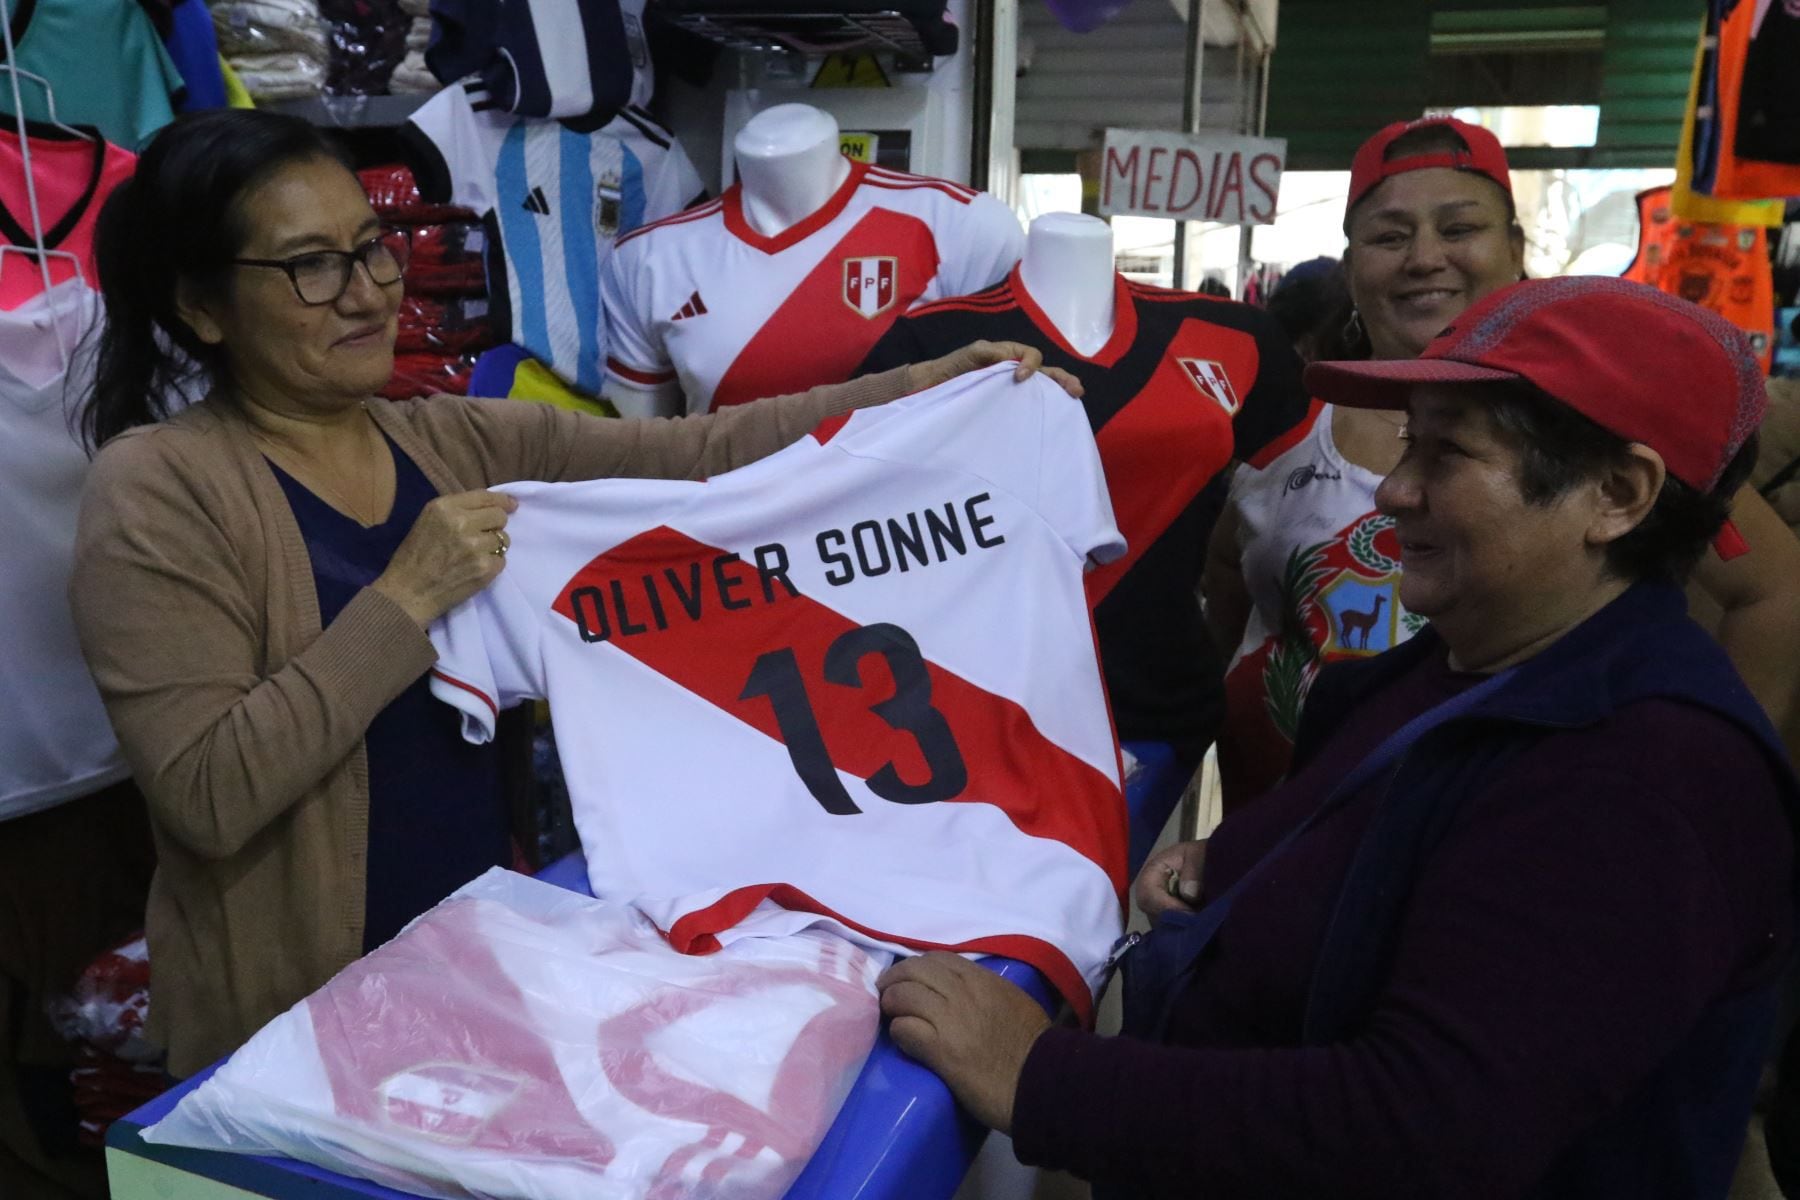 Una vendedora del emporio comercial de Gamarra ofrece la camiseta de Oliver Sonne a una compradora interesada en llevar la prenda para su hijo.